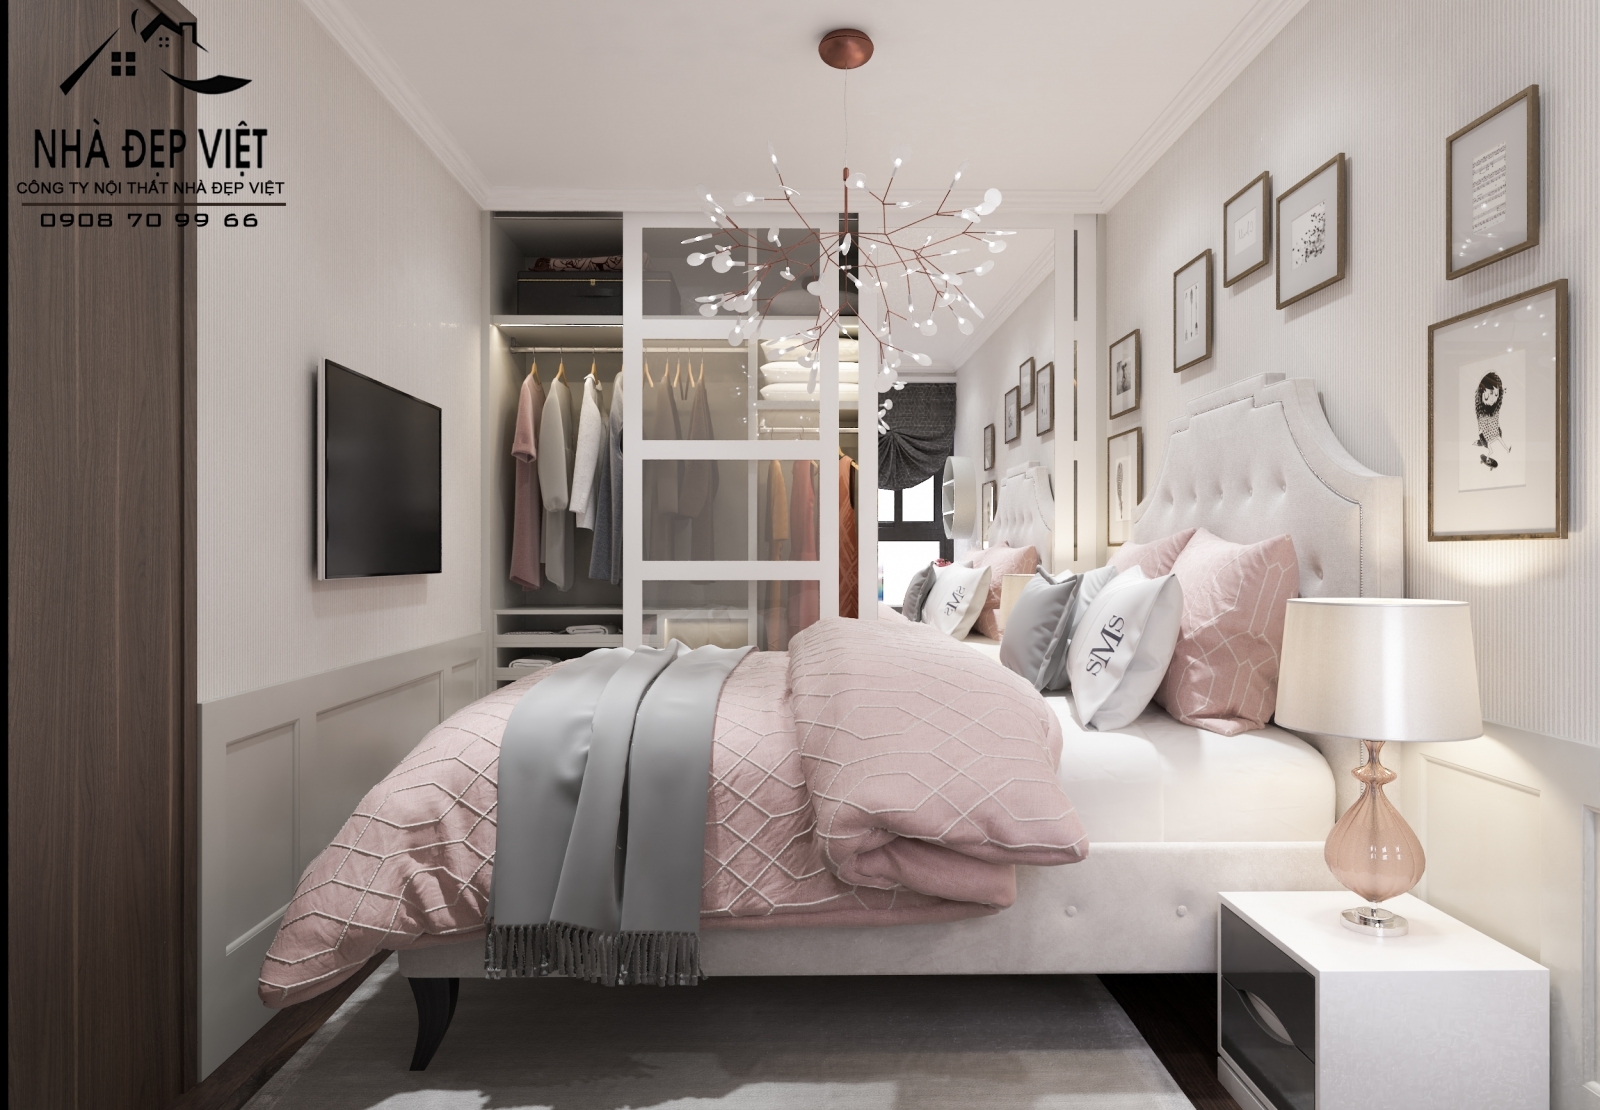 Top 50 cách trang trí phòng ngủ đẹp cho nữ hiện đại nhất